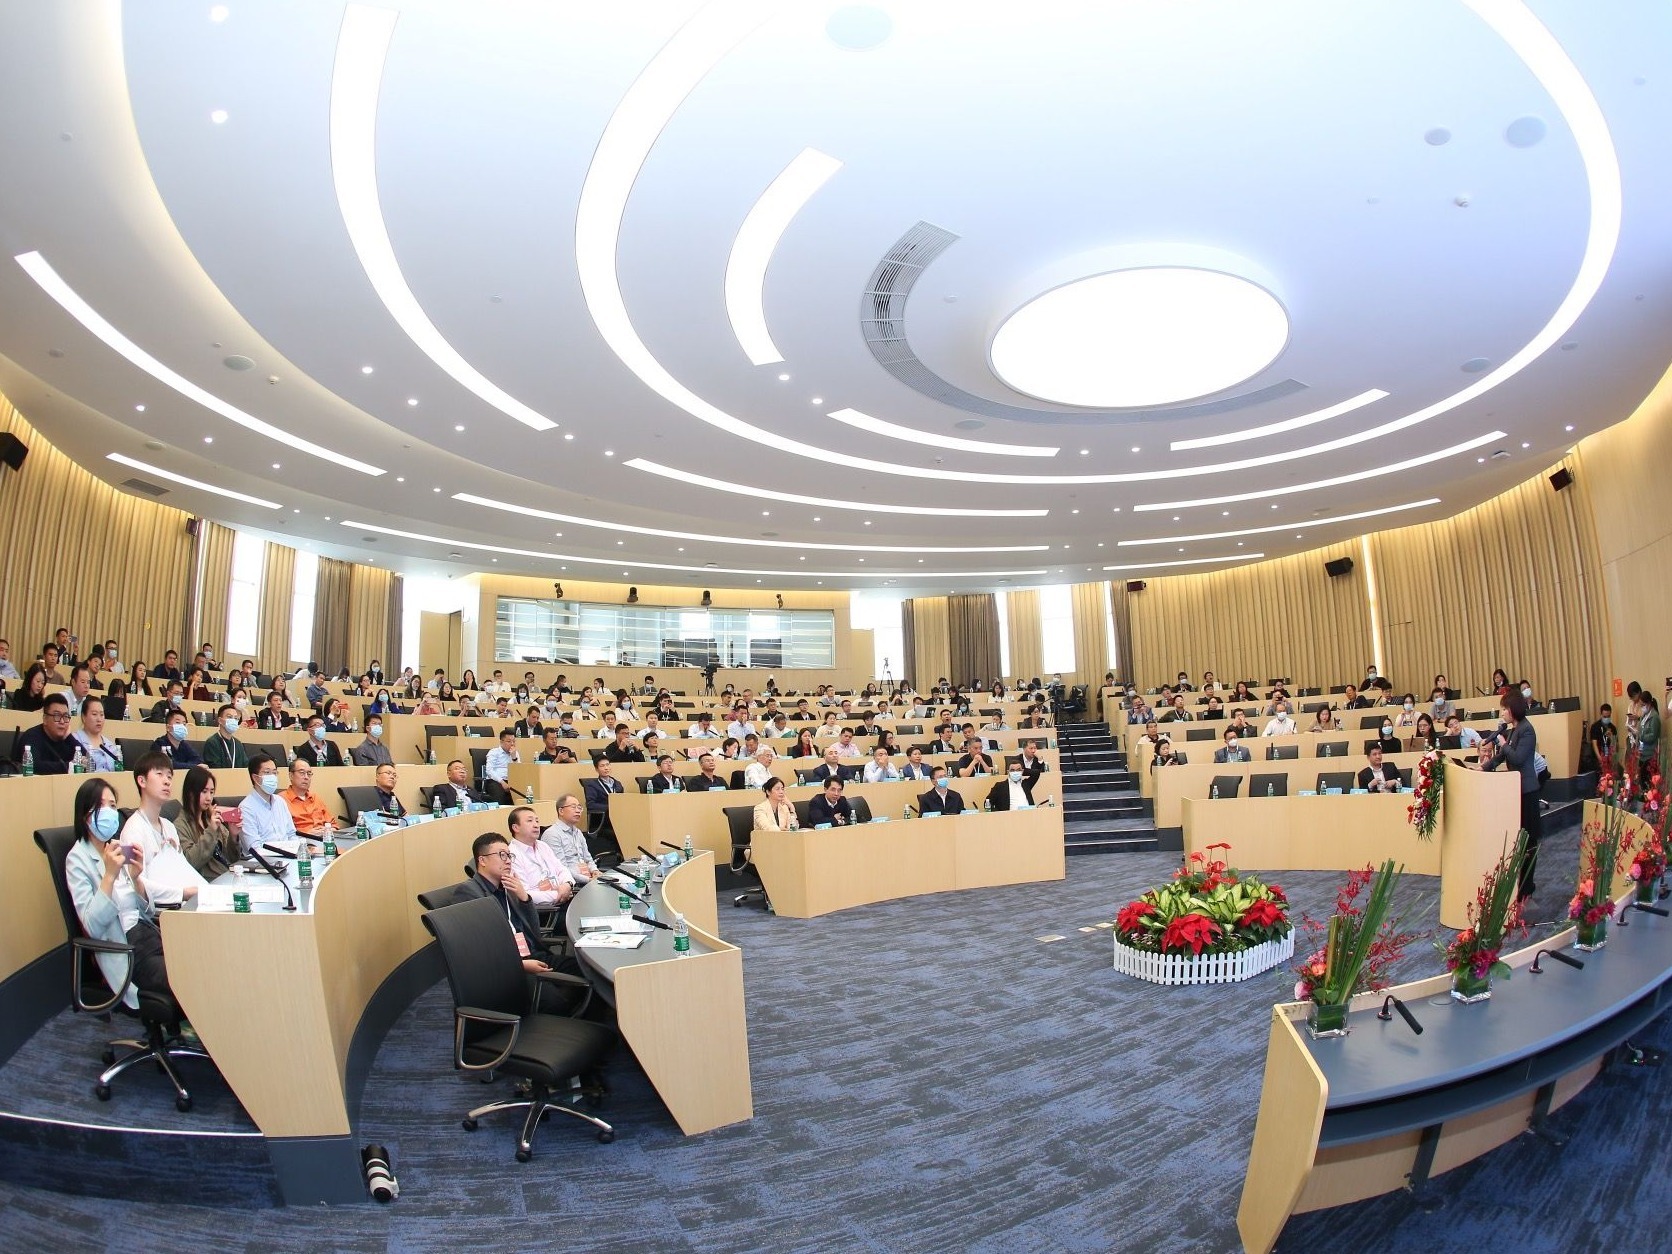 西丽湖国际科教城知识产权证券化与科技成果转化高峰论坛在南科大召开